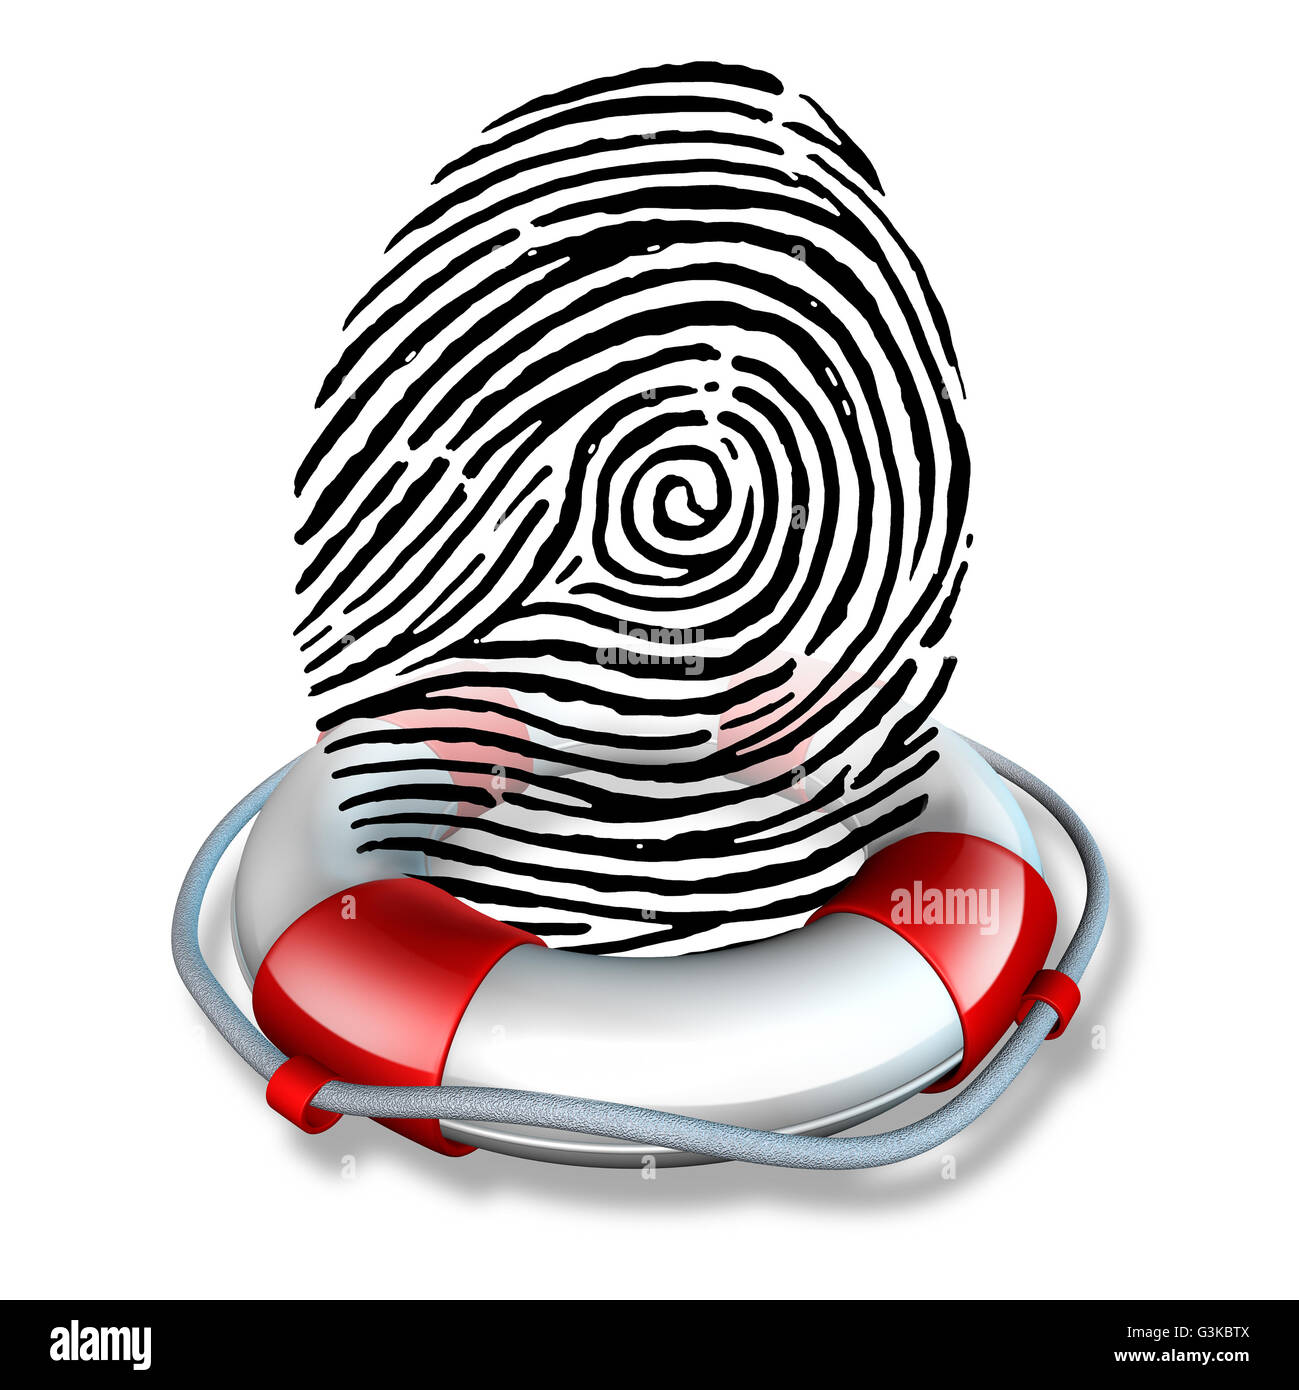 Seguridad de identidad y seguridad de identificación ID o la protección contra el fraude como un salvavidas lifebelt protegiendo una huella dactilar o huella dactilar icono como un símbolo para rescatar los datos personales y la información de los consumidores protección como una ilustración 3D. Foto de stock